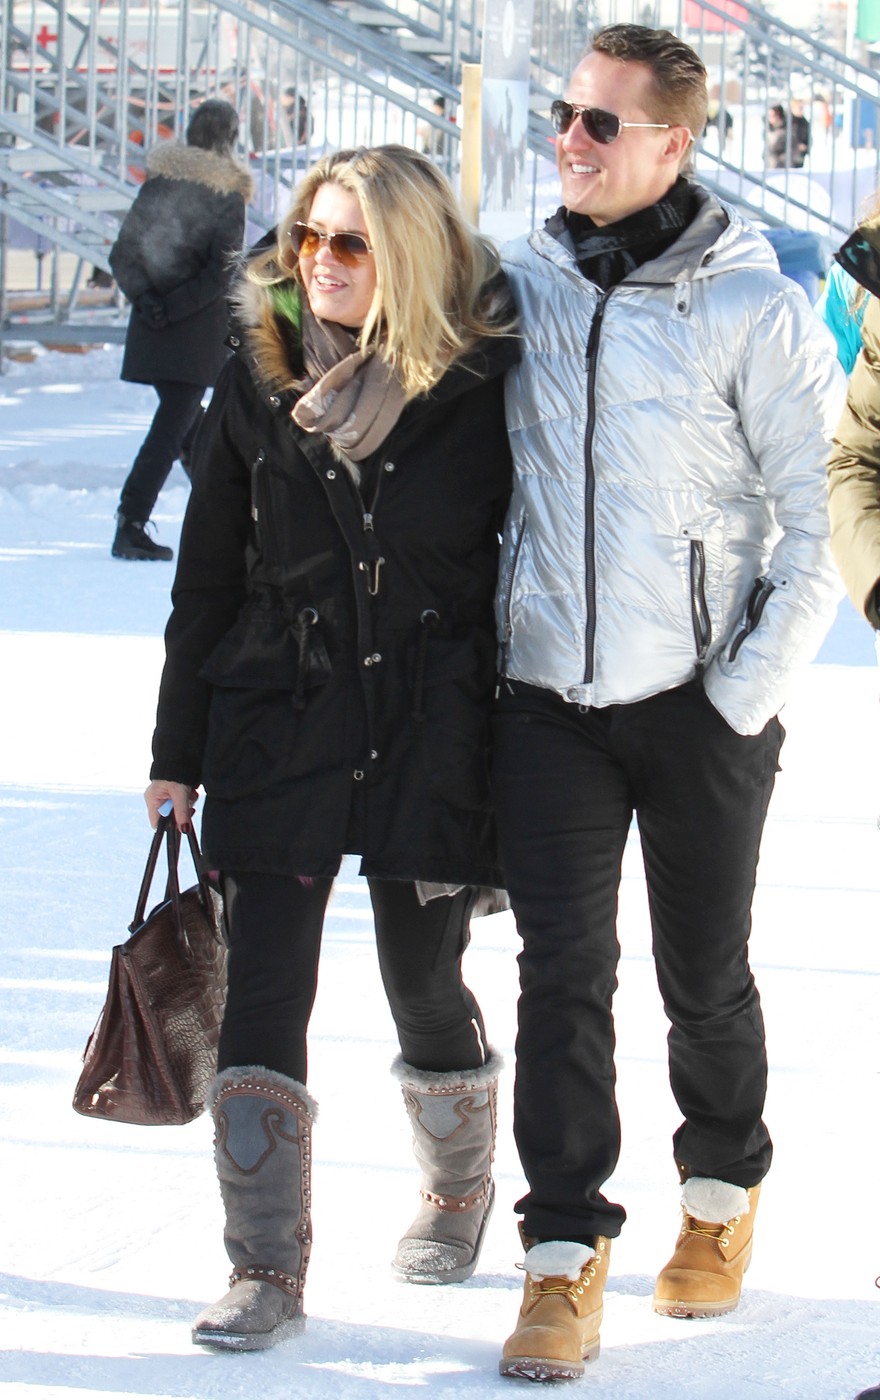 Michael Schumacher és felesége Corinna